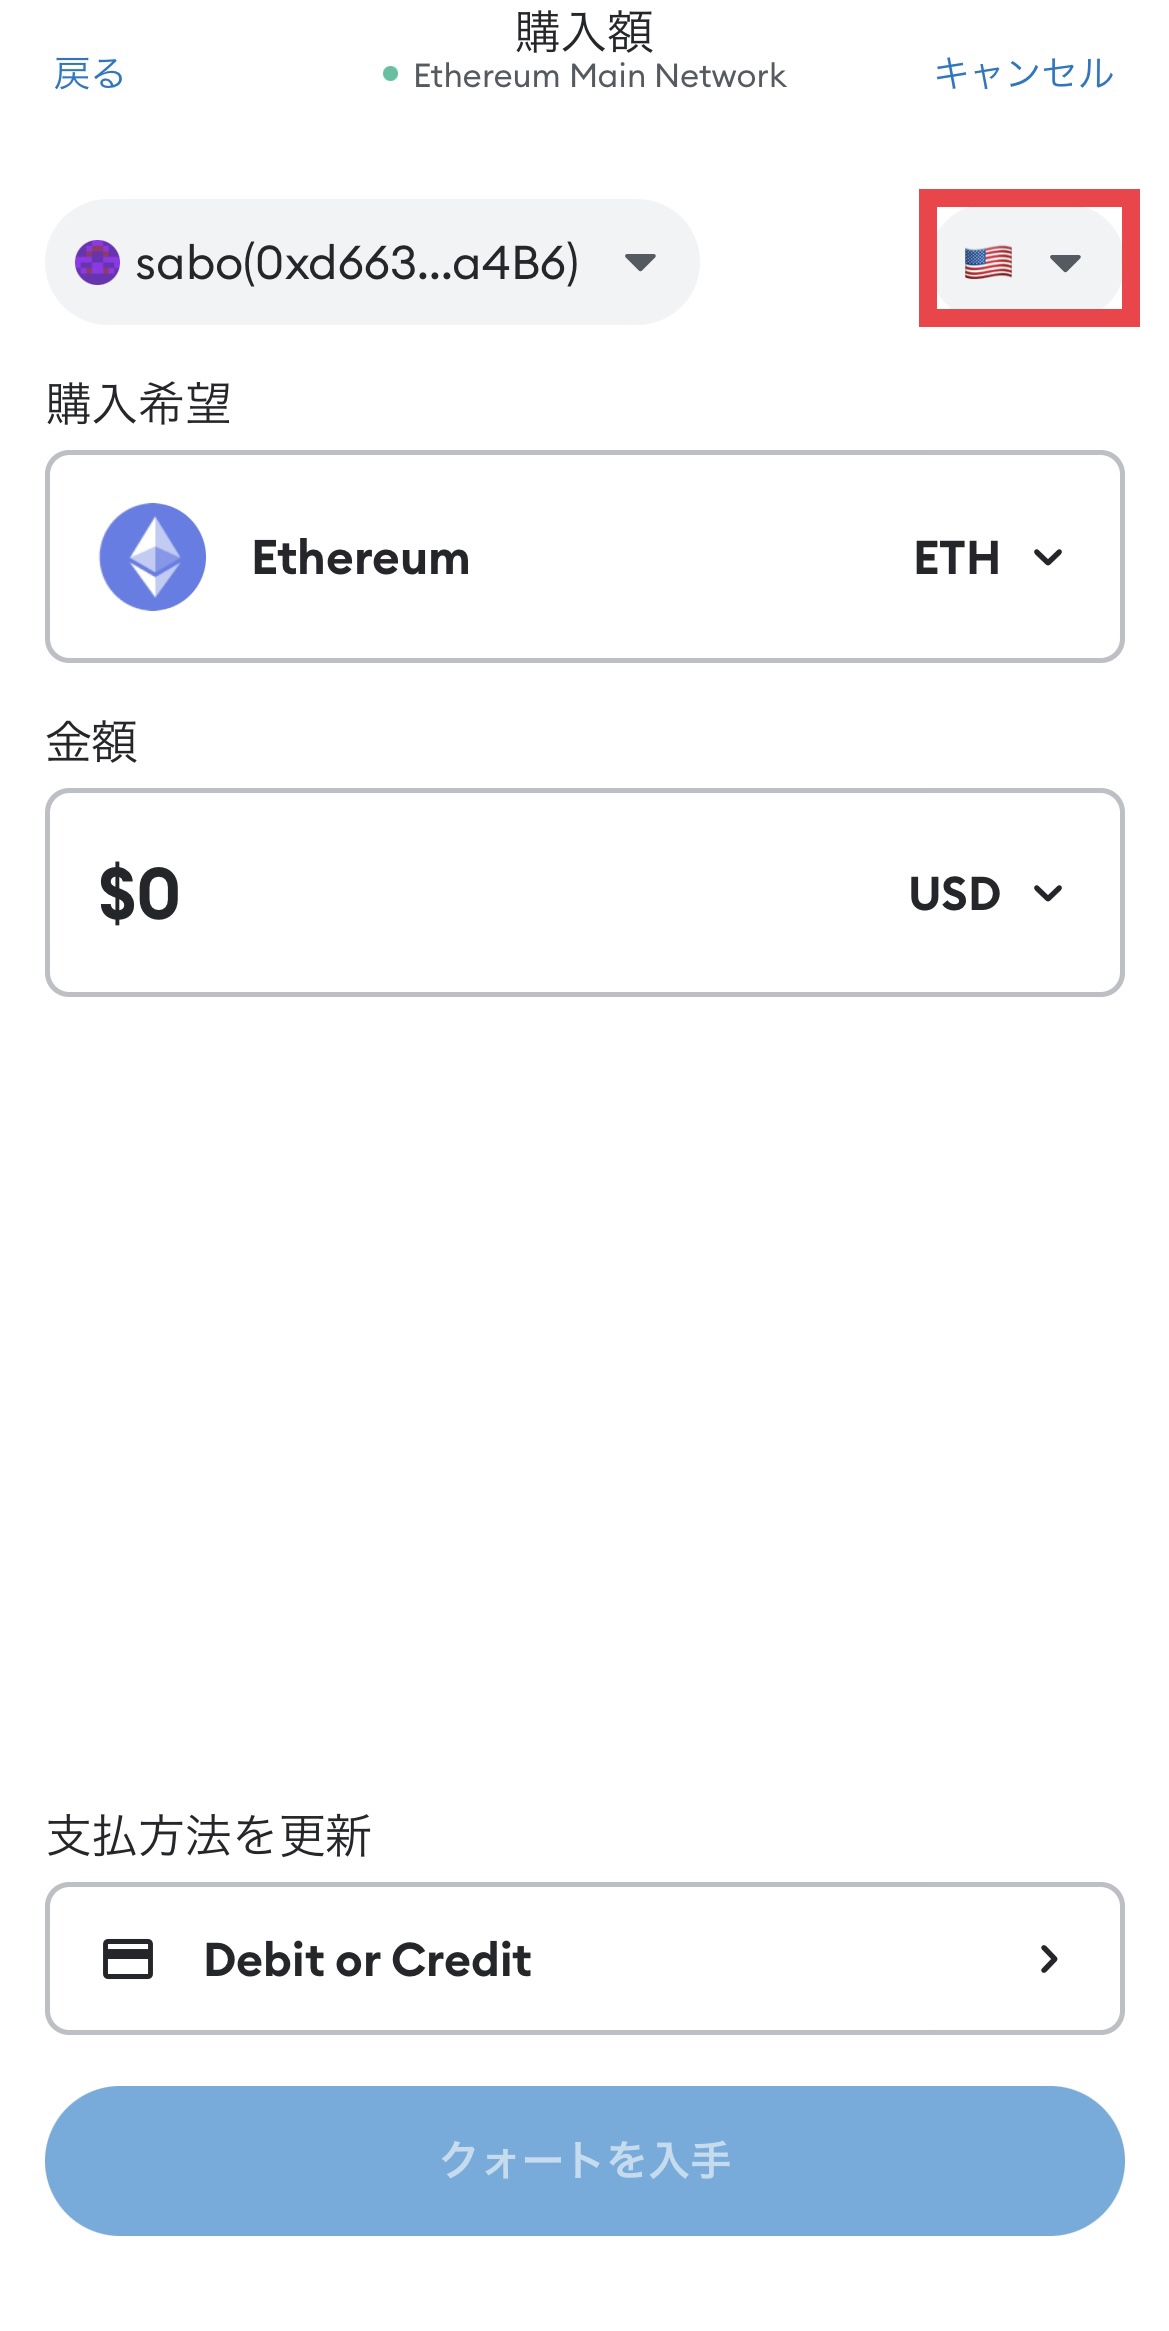 MetaMask（メタマスク）のクレジットカード決済で仮想通貨を購入する方法